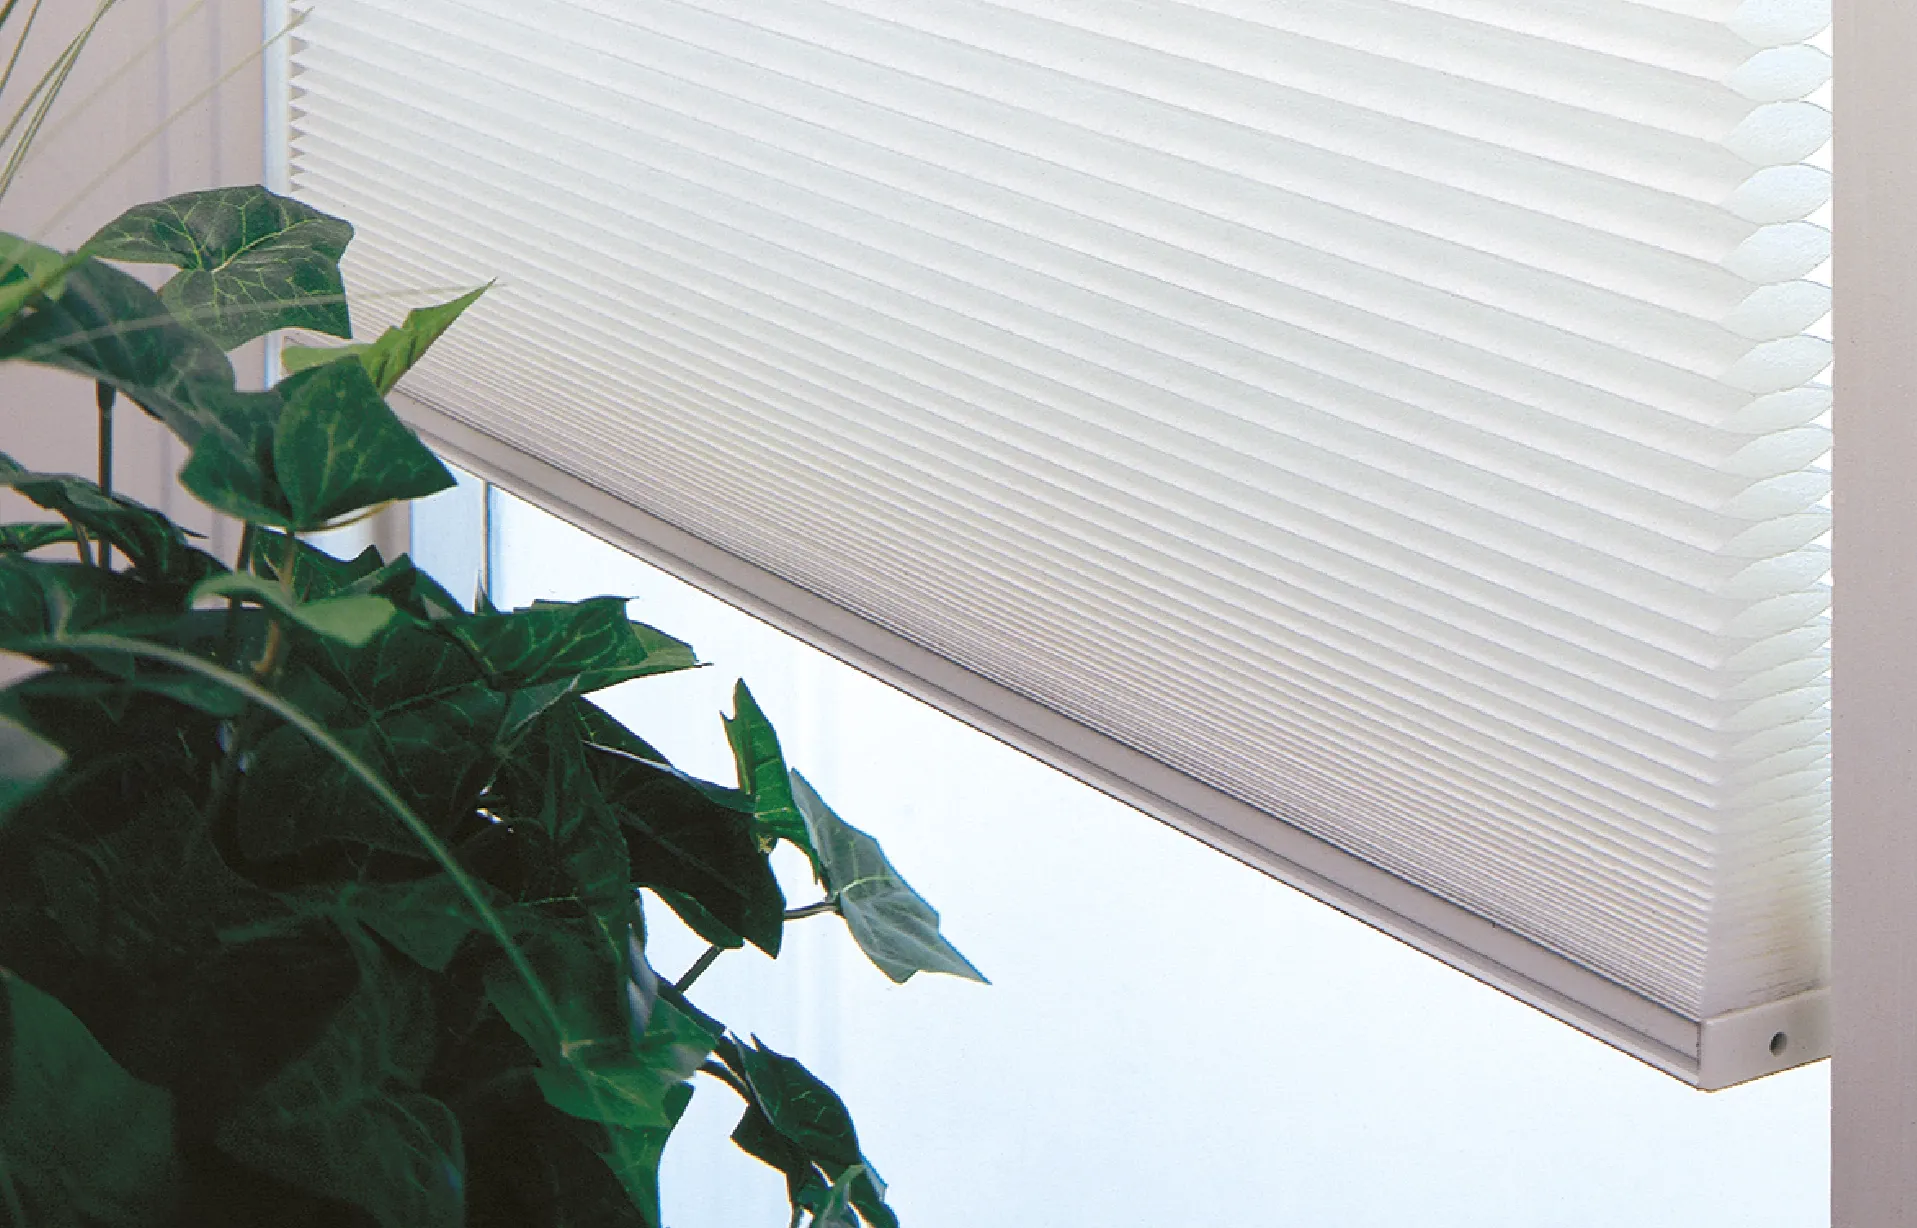 Estas persianas son ideales para colocar dentro del marco de la ventanta, logrando así un mejor control de la luz natural.